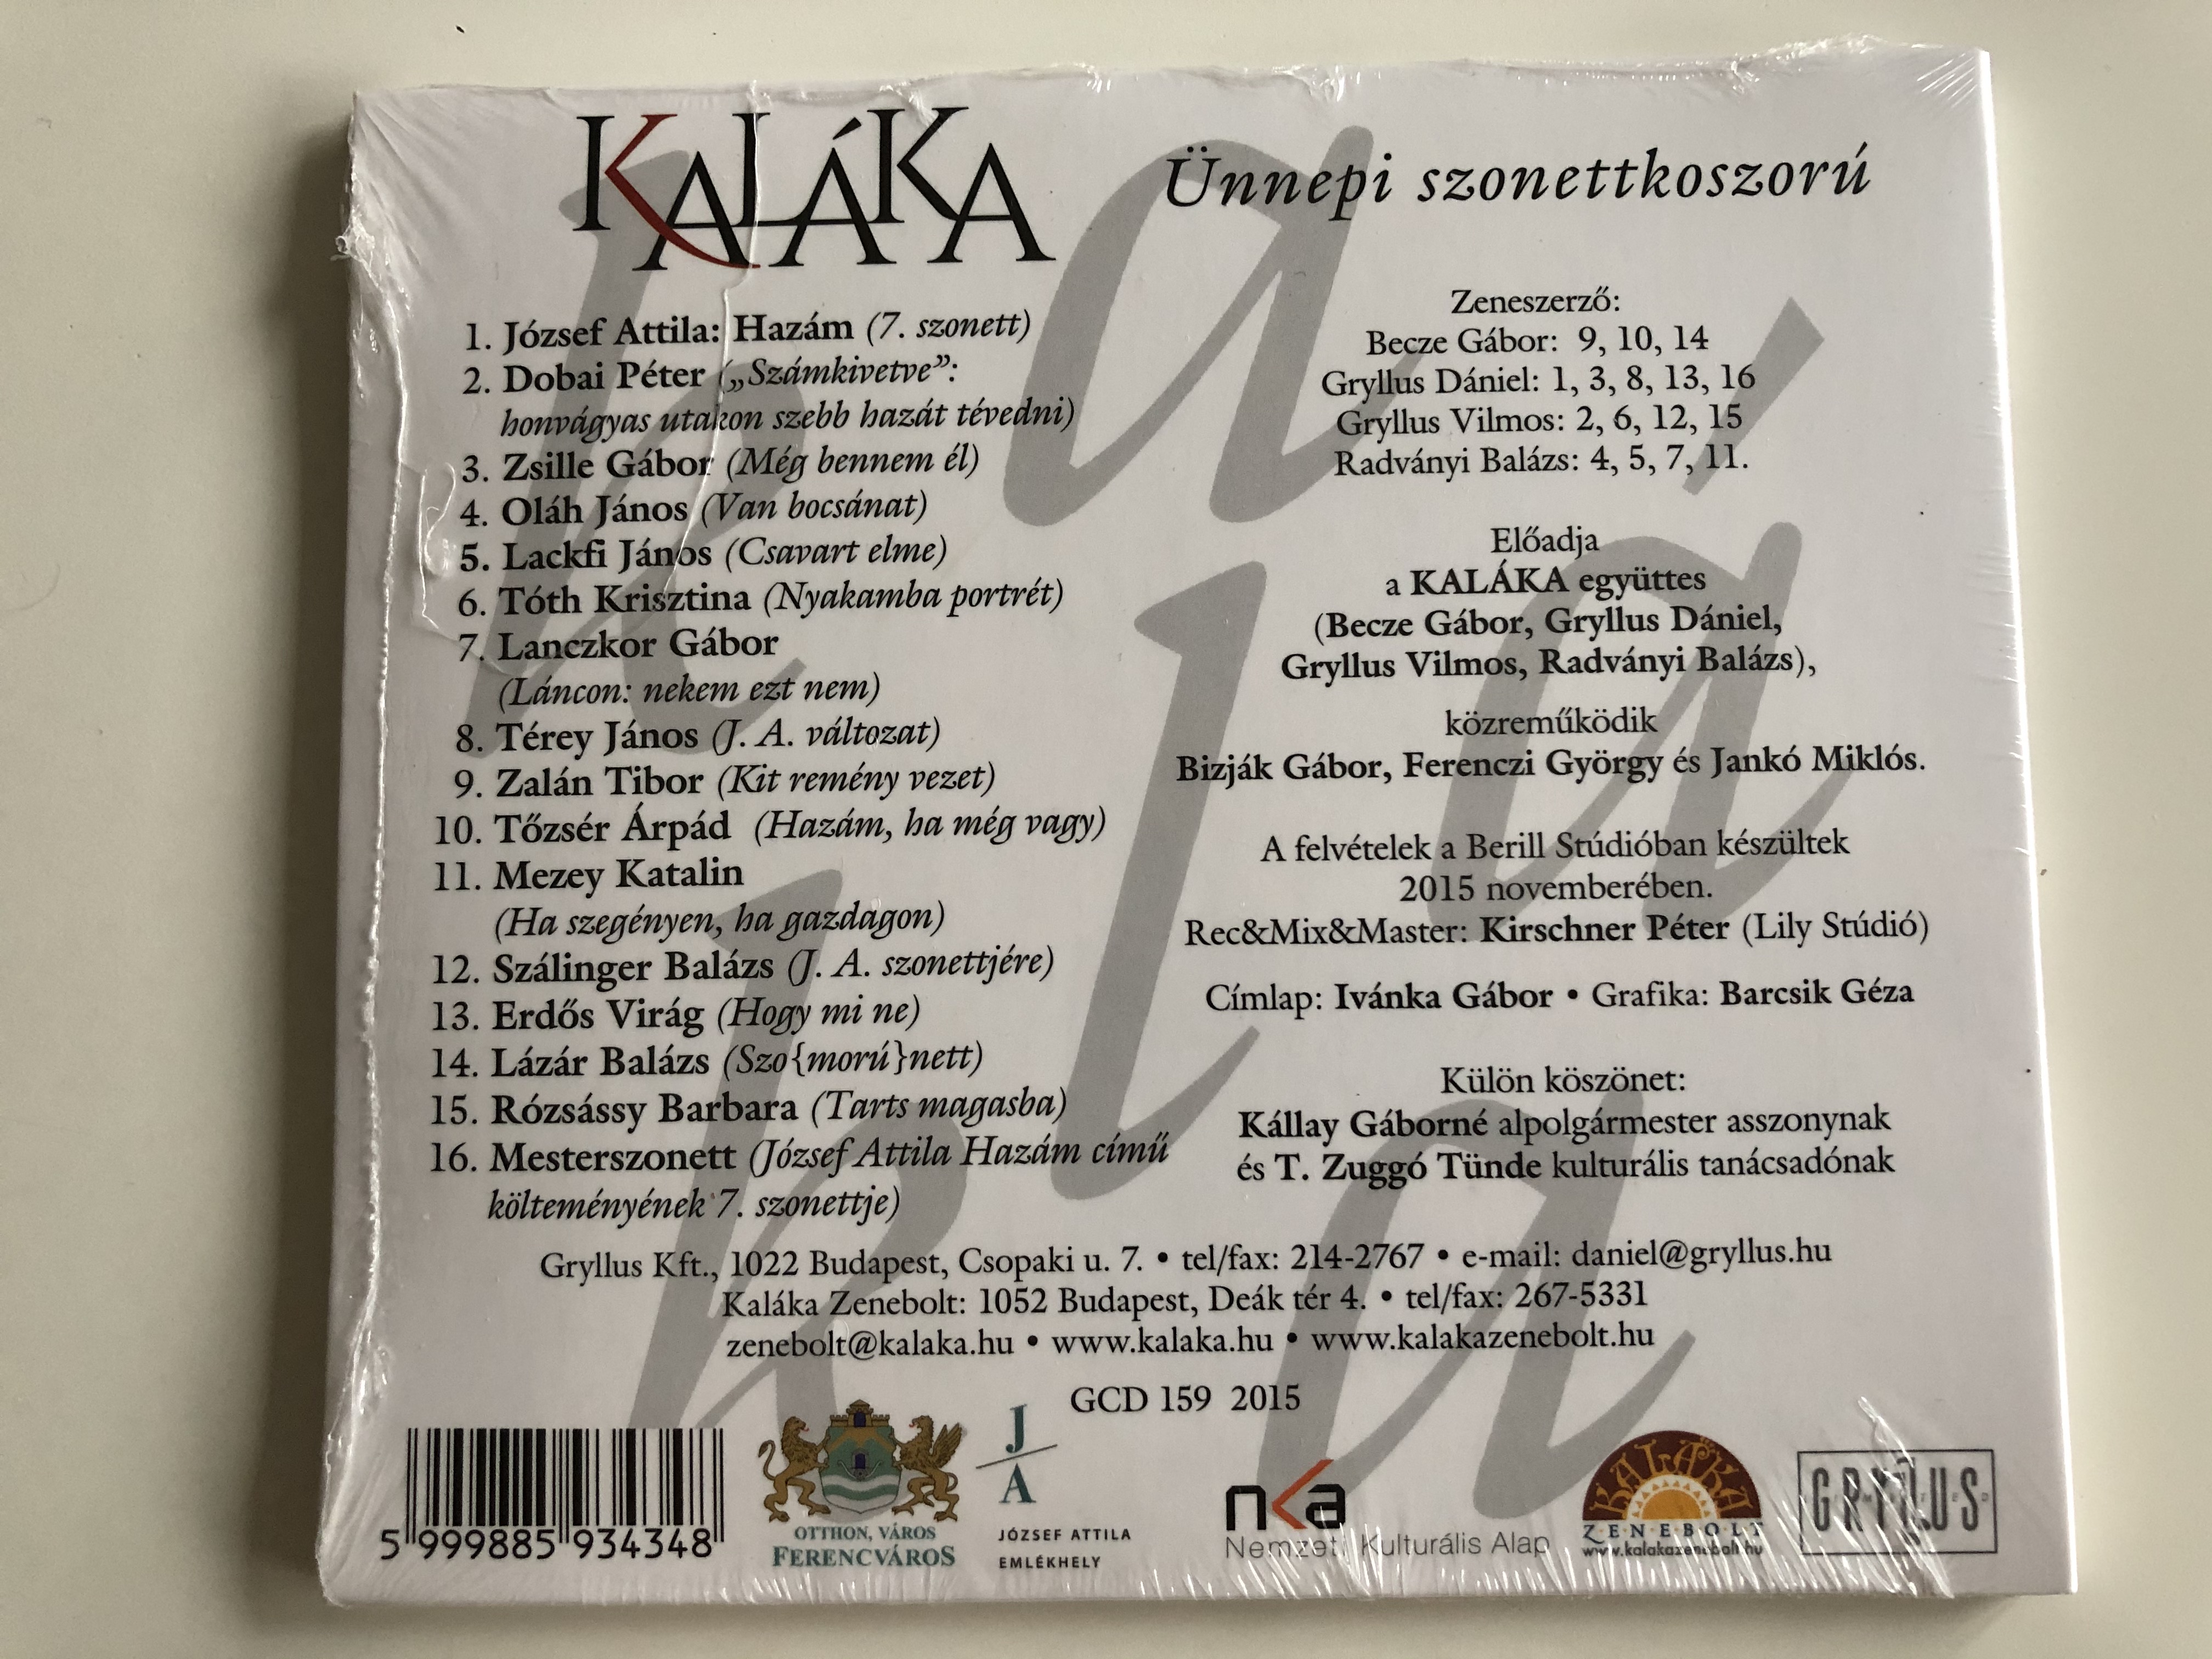 kalaka-unnepi-szonettkoszoru-jozsef-attila-tiszteletere-gryllus-audio-cd-2015-gcd-159-2-.jpg